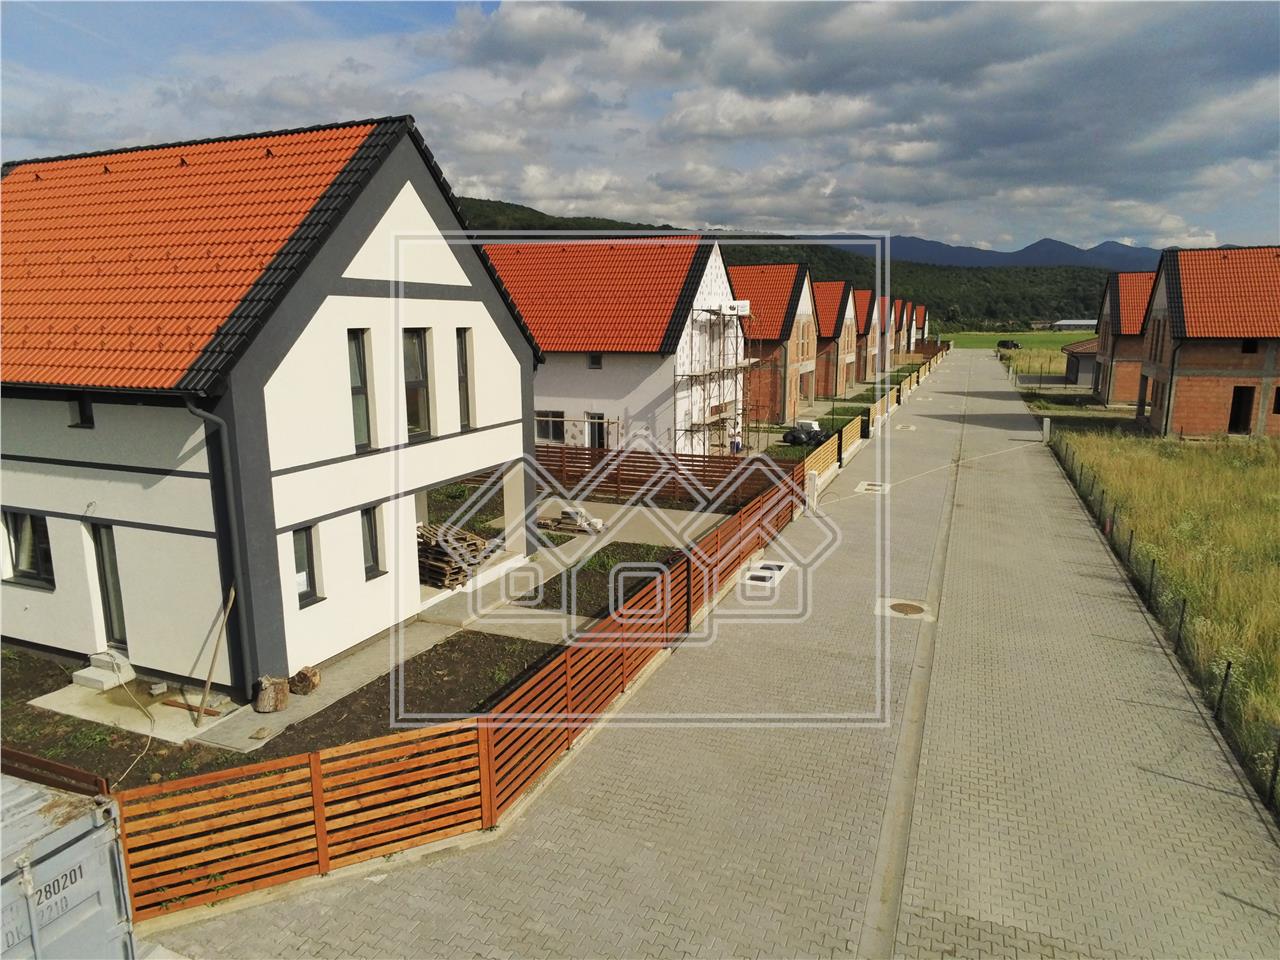 Casa de vanzare in Sibiu, la cheie, constructie noua, intabulata